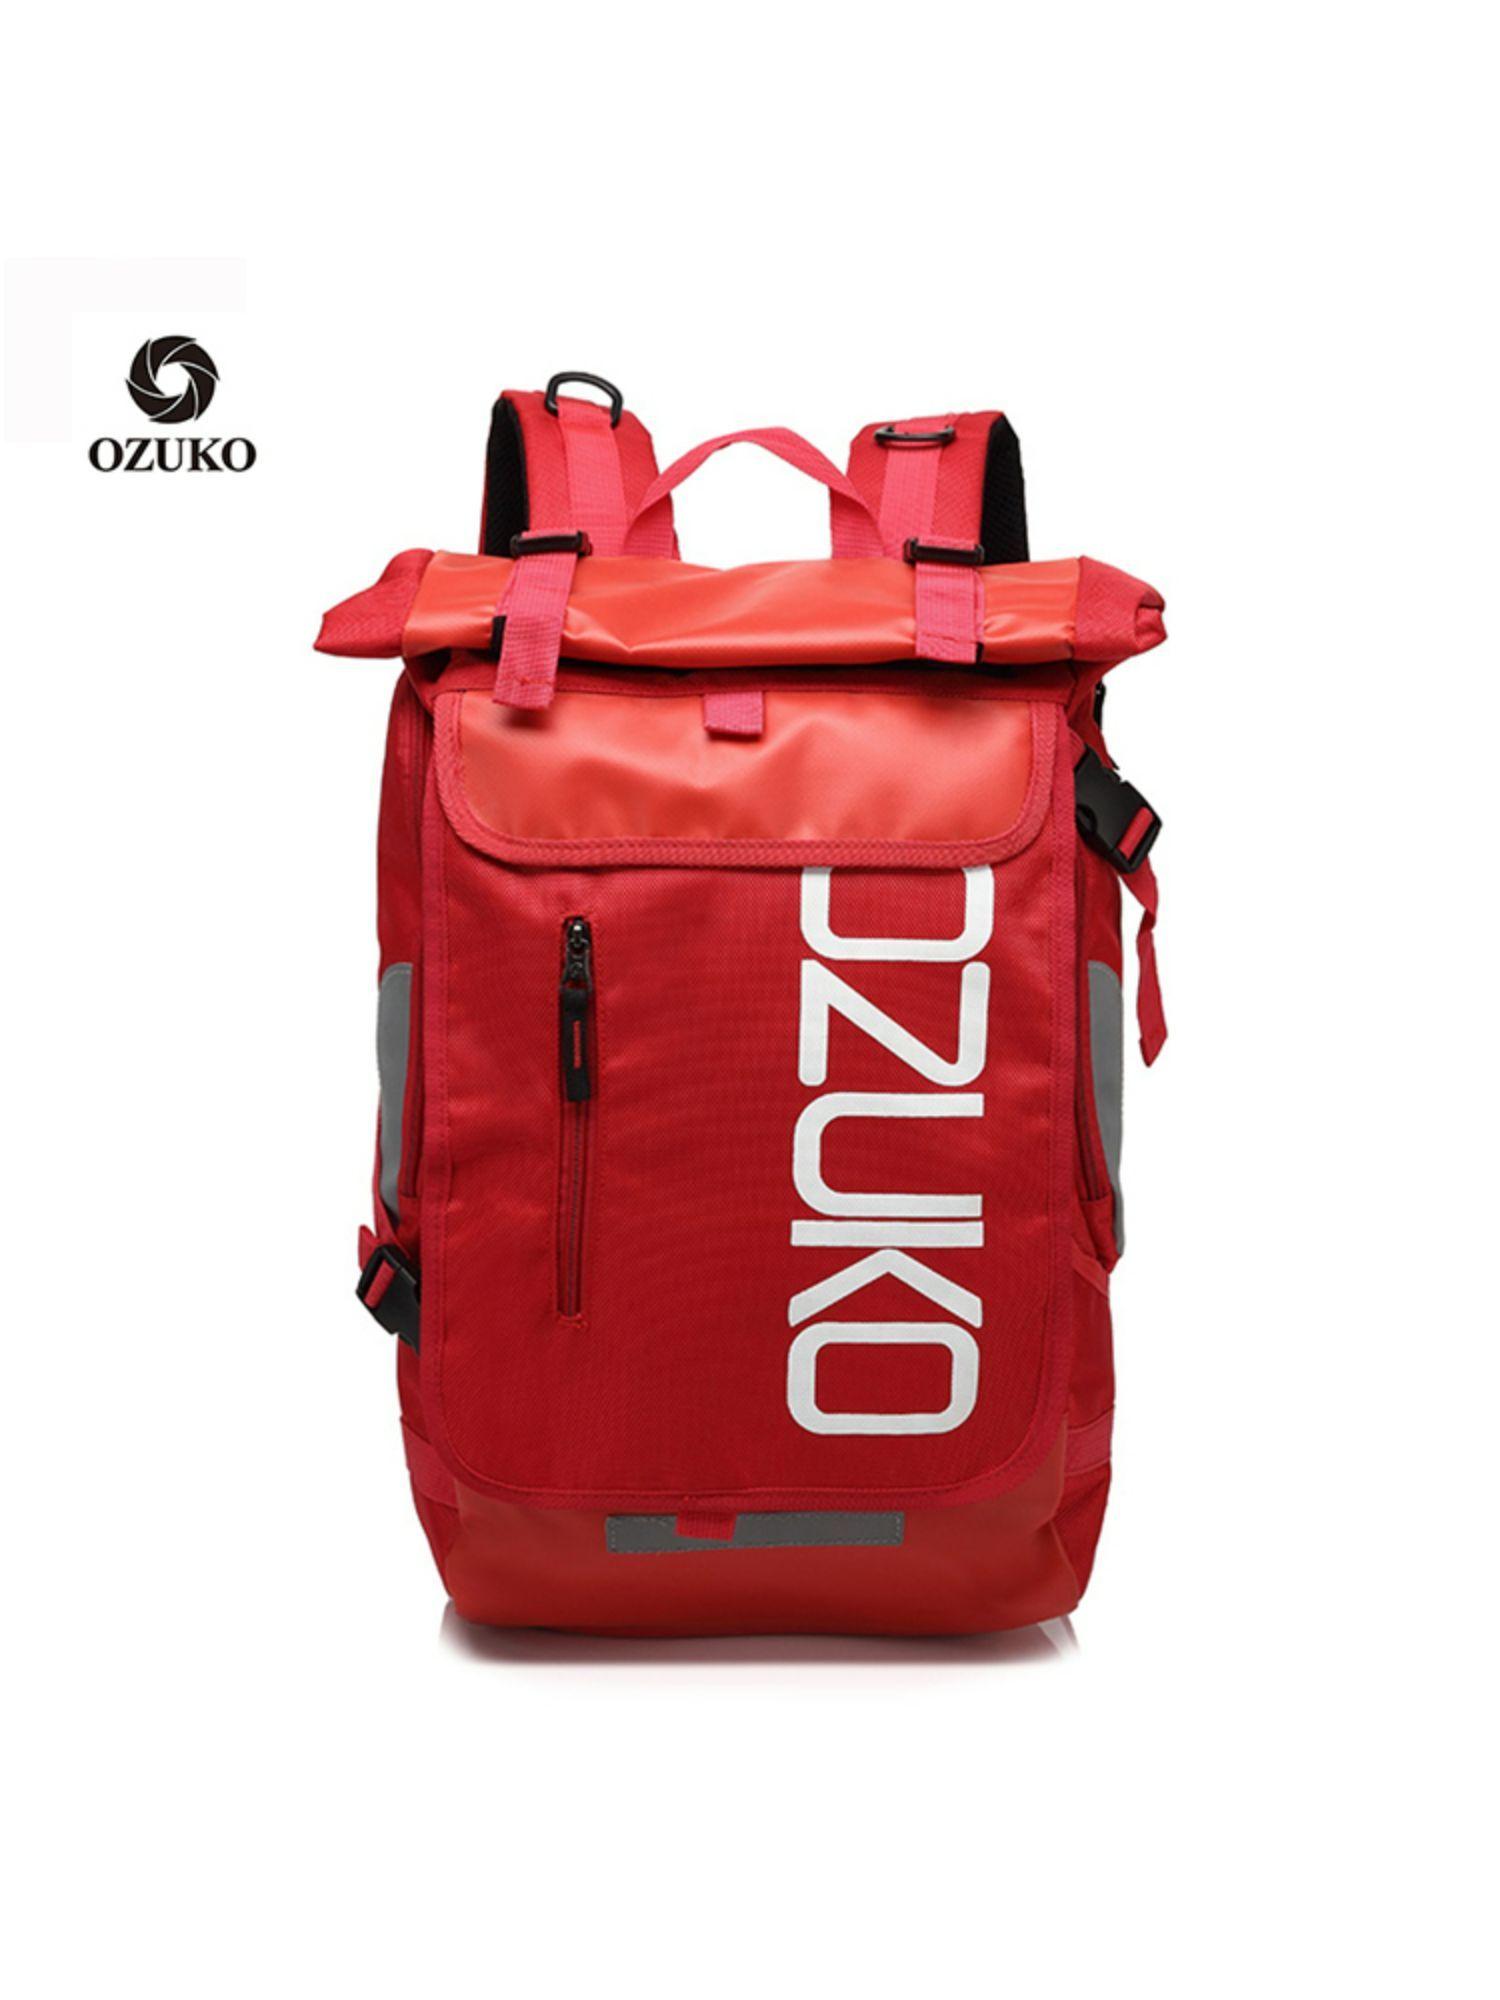 8020 Range Red Color Soft Case Backpack